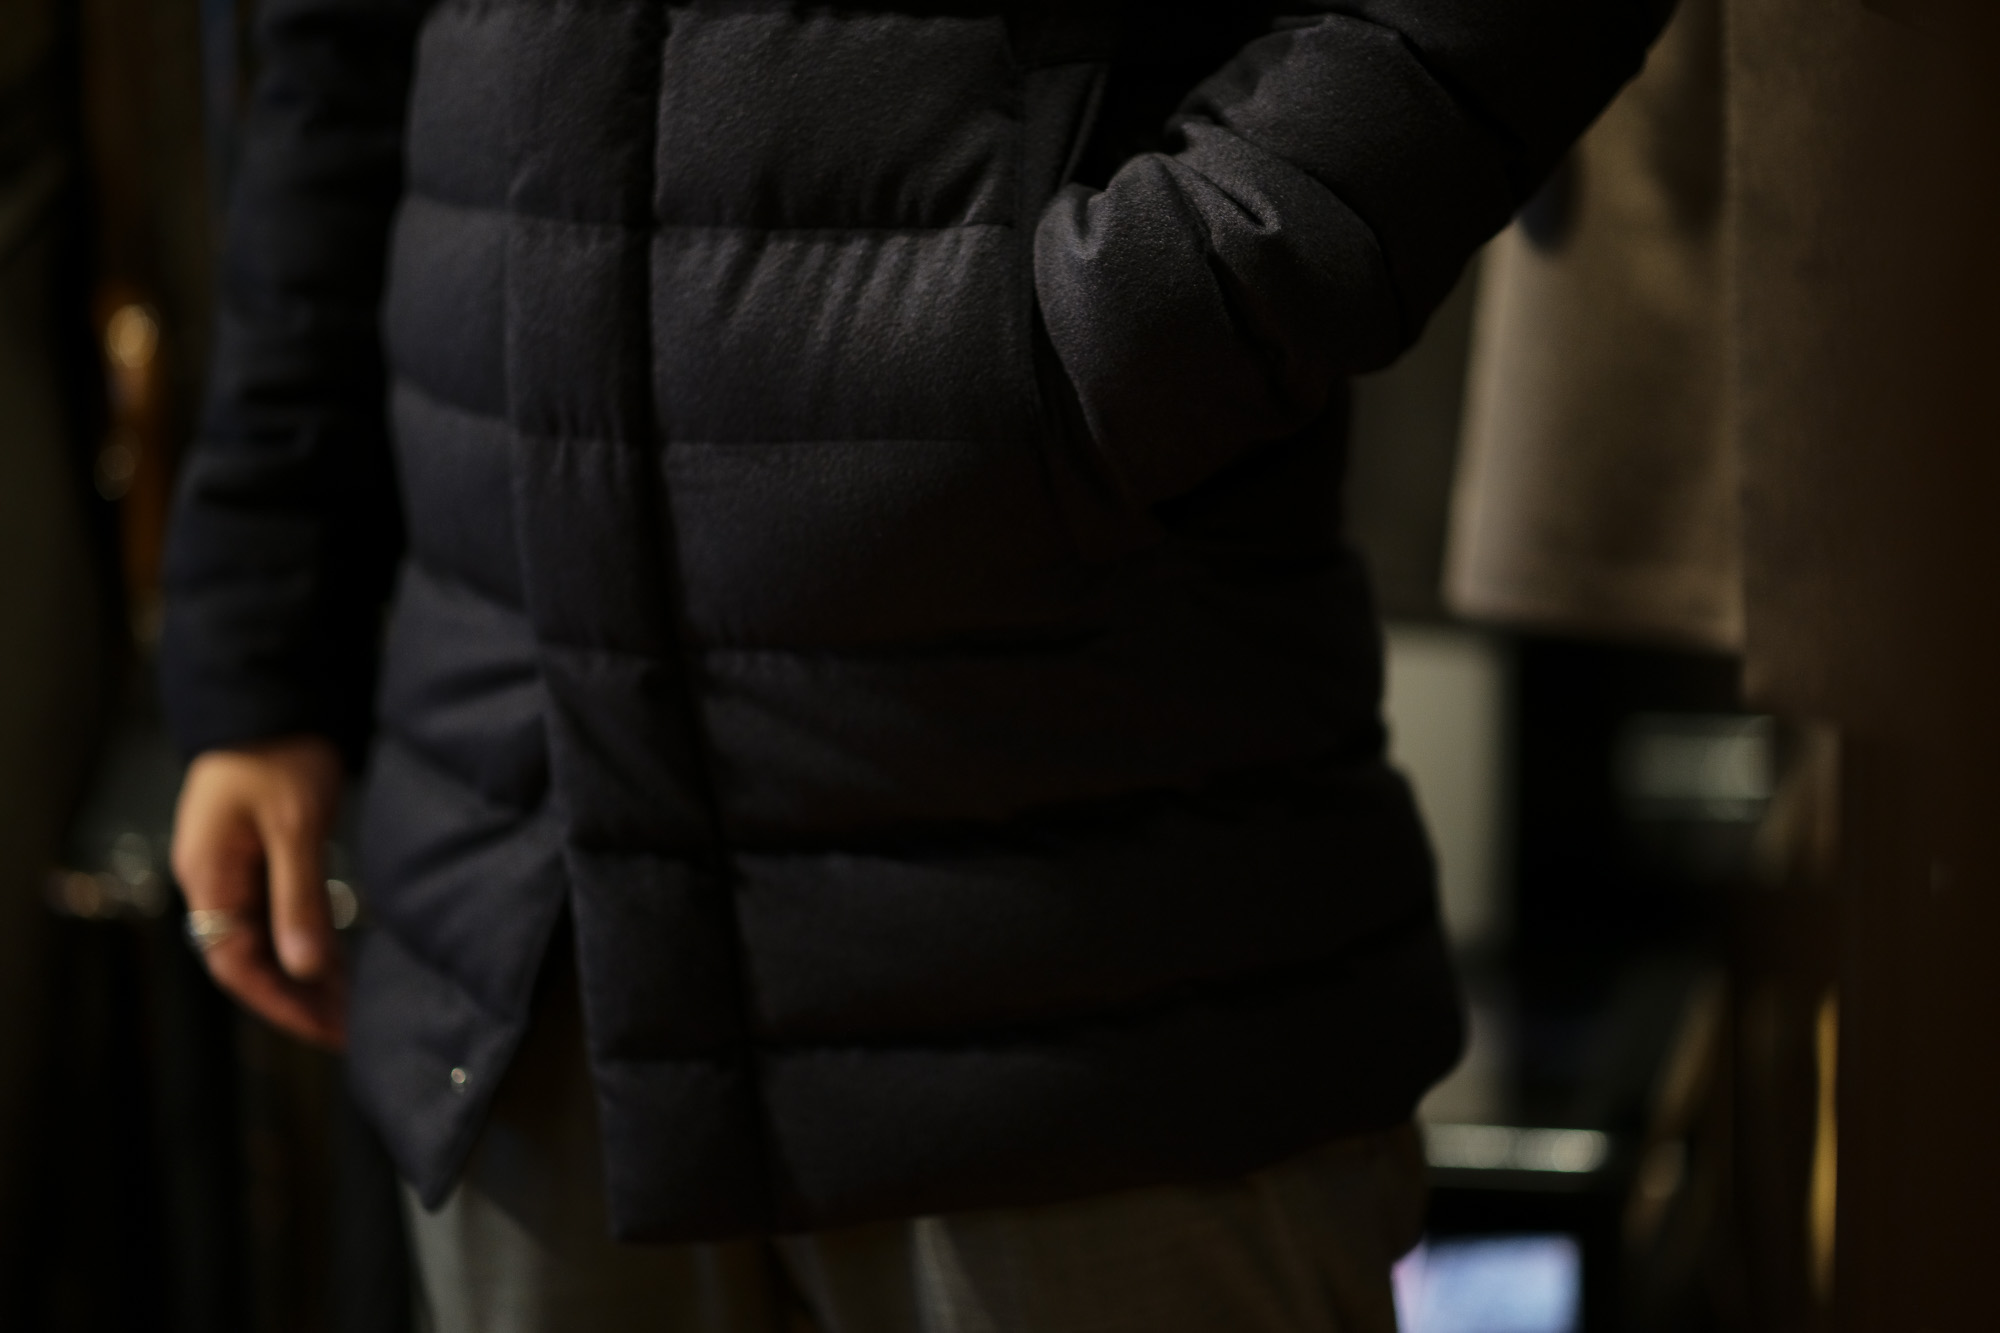 HERNO(ヘルノ) PI0439U Silk Cashmere Down coat (シルク カシミア ダウン コート) PIACENZA (ピアツェンツァ) DROP GLIDE NYLON ULTRALIGHT 撥水 シルク カシミア ダウン コート NAVY (ネイビー・9200) Made in italy (イタリア製) 2018 秋冬新作 alto e dirittoアルトエデリット 42,44,46,48,50,52